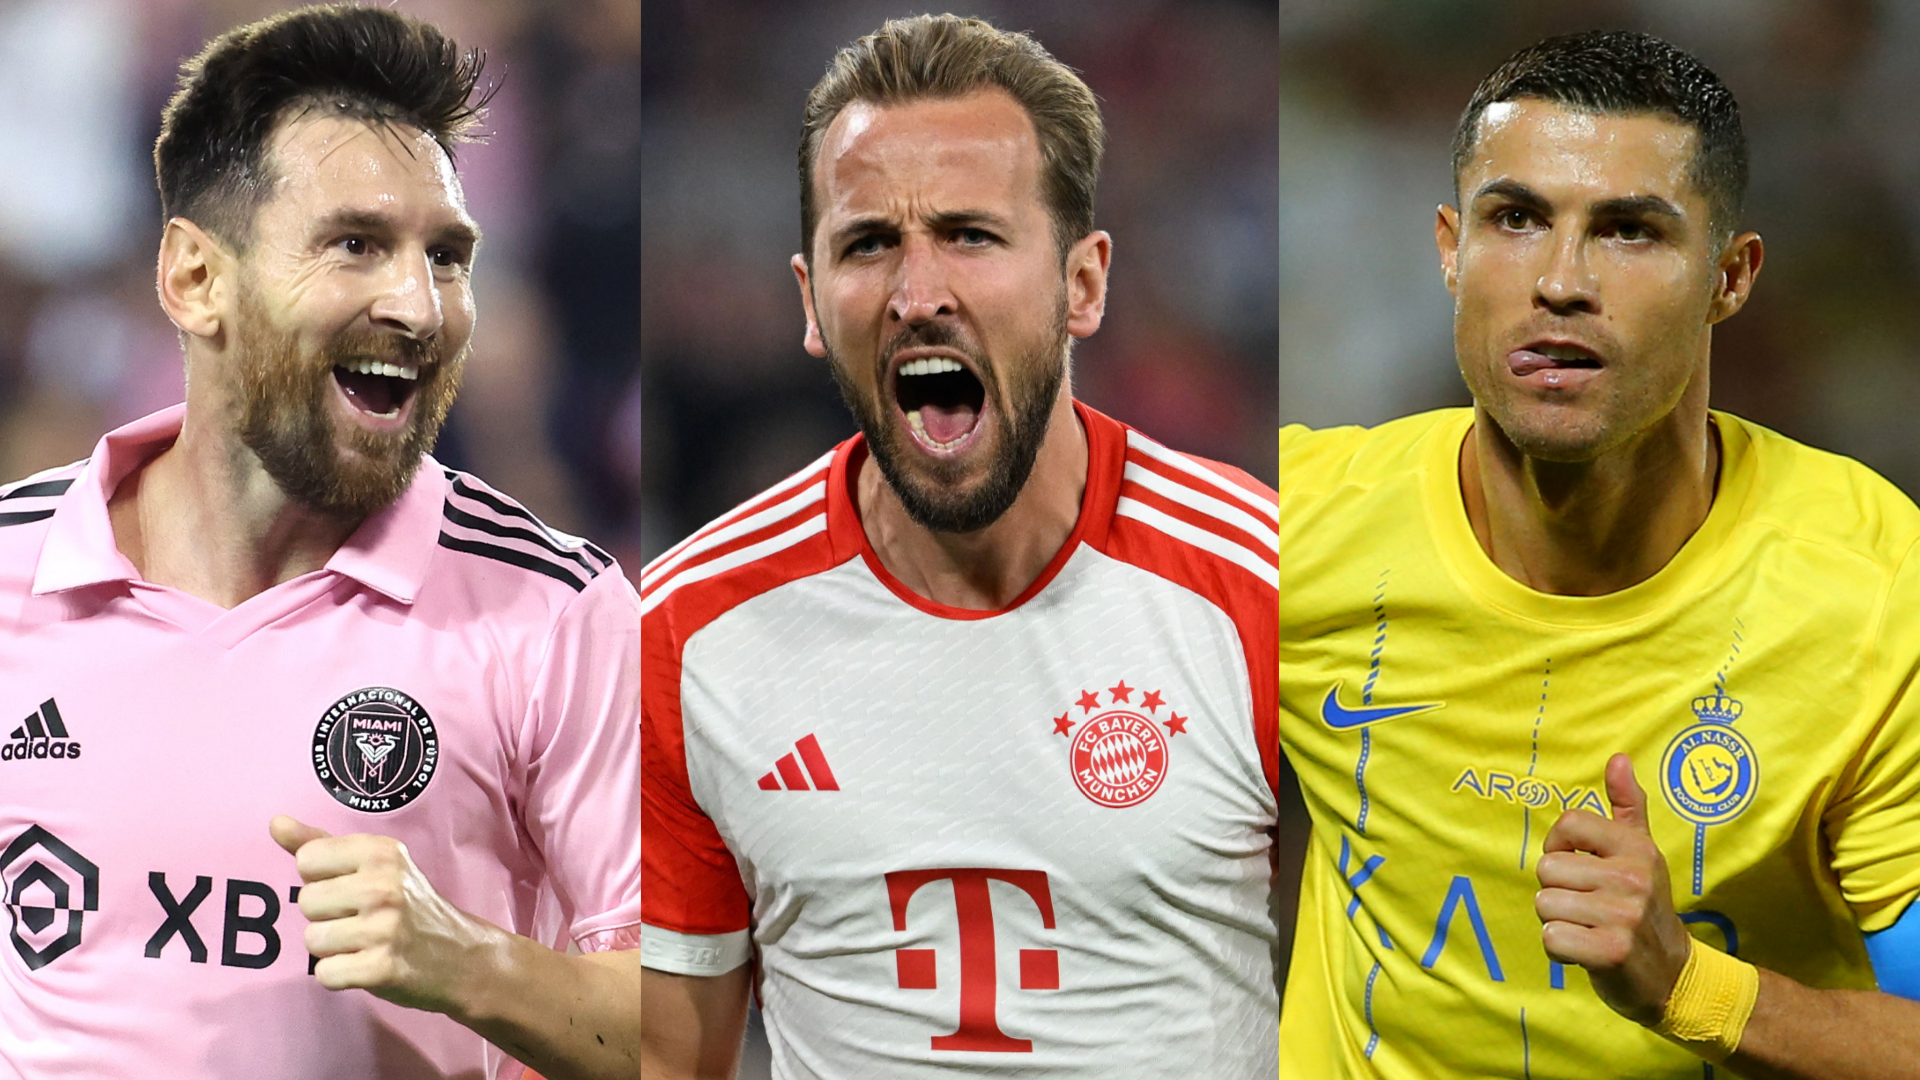 "Die Messlatte sehr hoch gelegt": FC Bayerns Harry Kane nennt Cristiano Ronaldo und Lionel Messi als Vorbilder